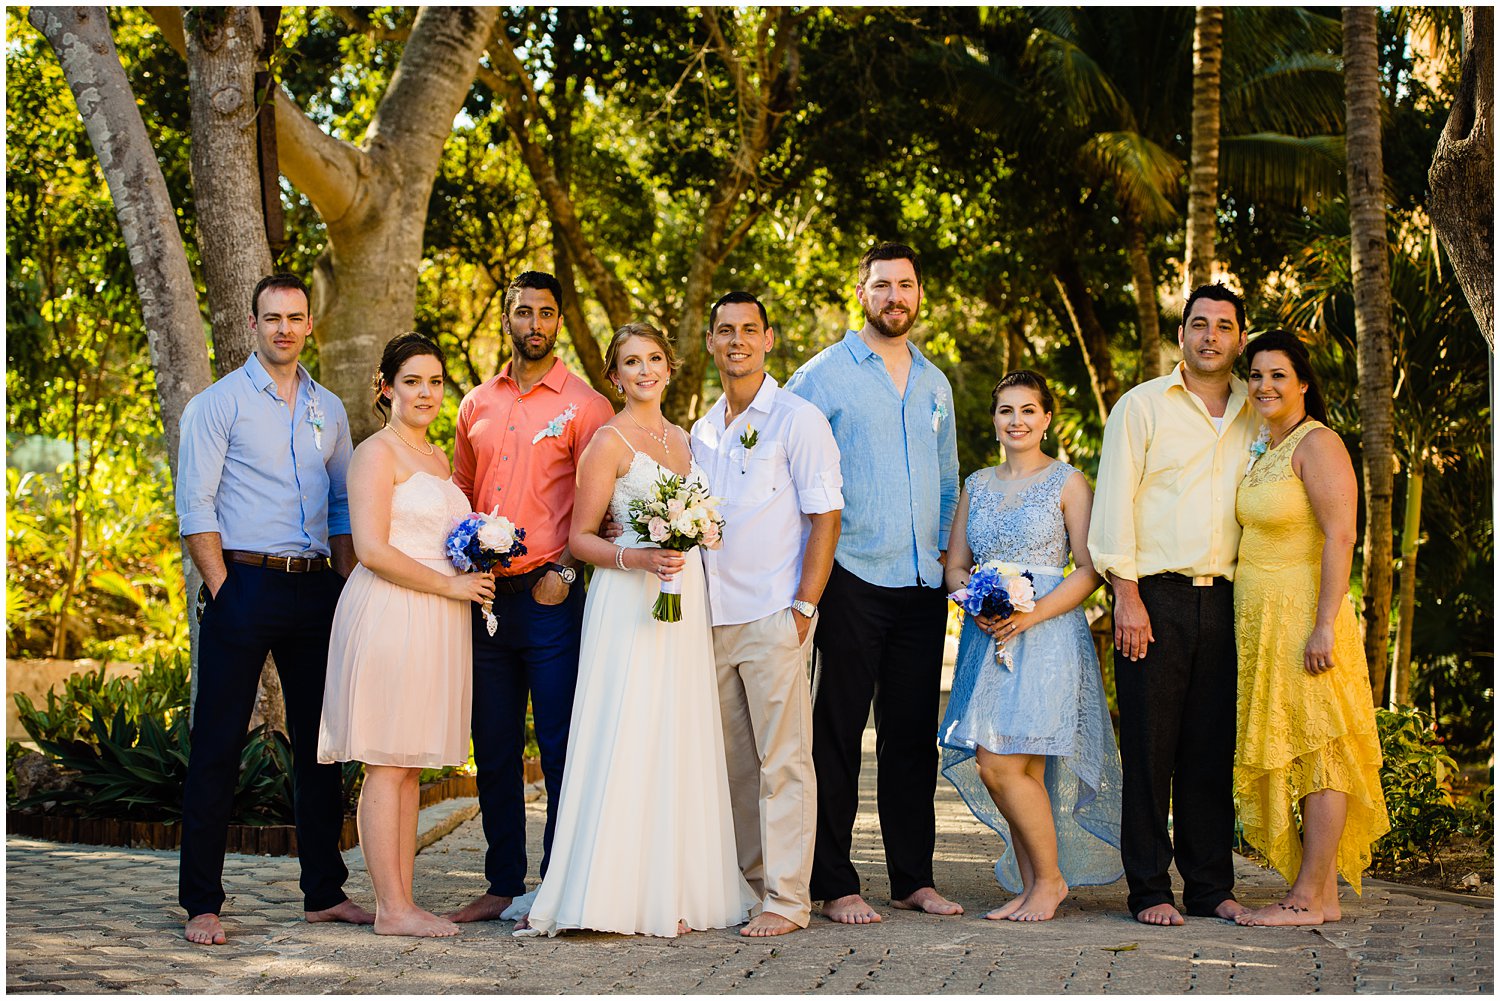 Destination Wedding Photos at Sandos Playacar in Mexico